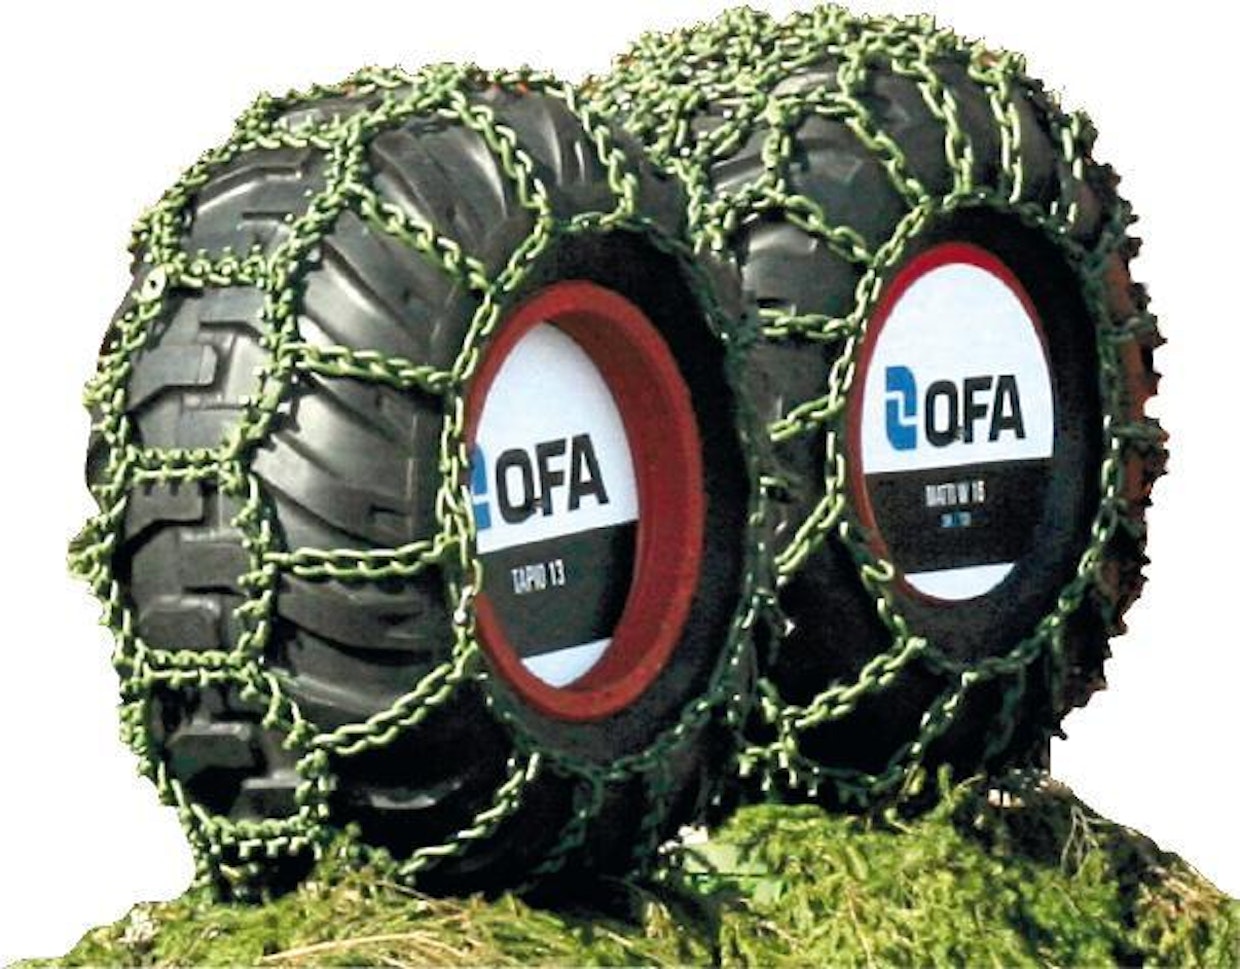 OFA:n tunnettuja tuotemalleja ovat Tapio -maataloustraktoriketjut ja Matti W-metsätraktoreiden ketjut. Molemmat perustuvat pitkän ajan tuotekehitykseen.